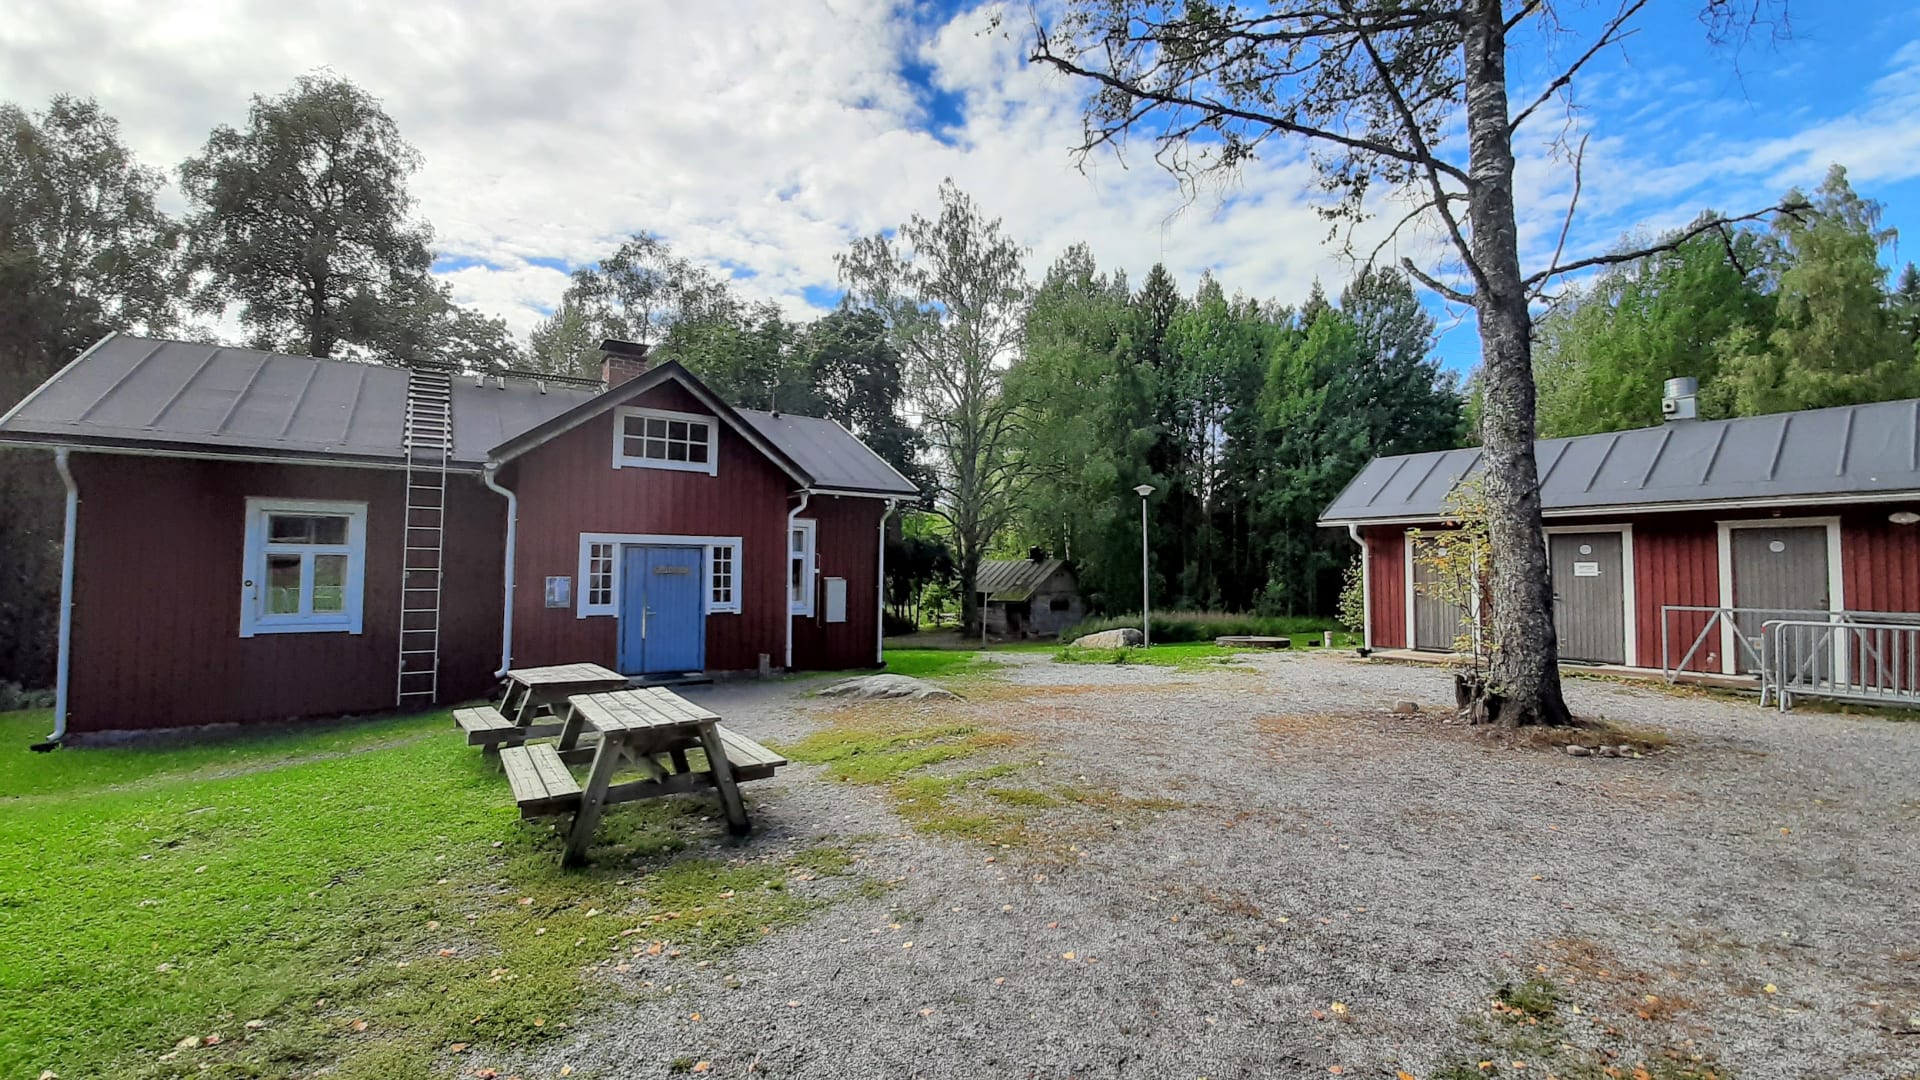 Kortejärvi estate from outside